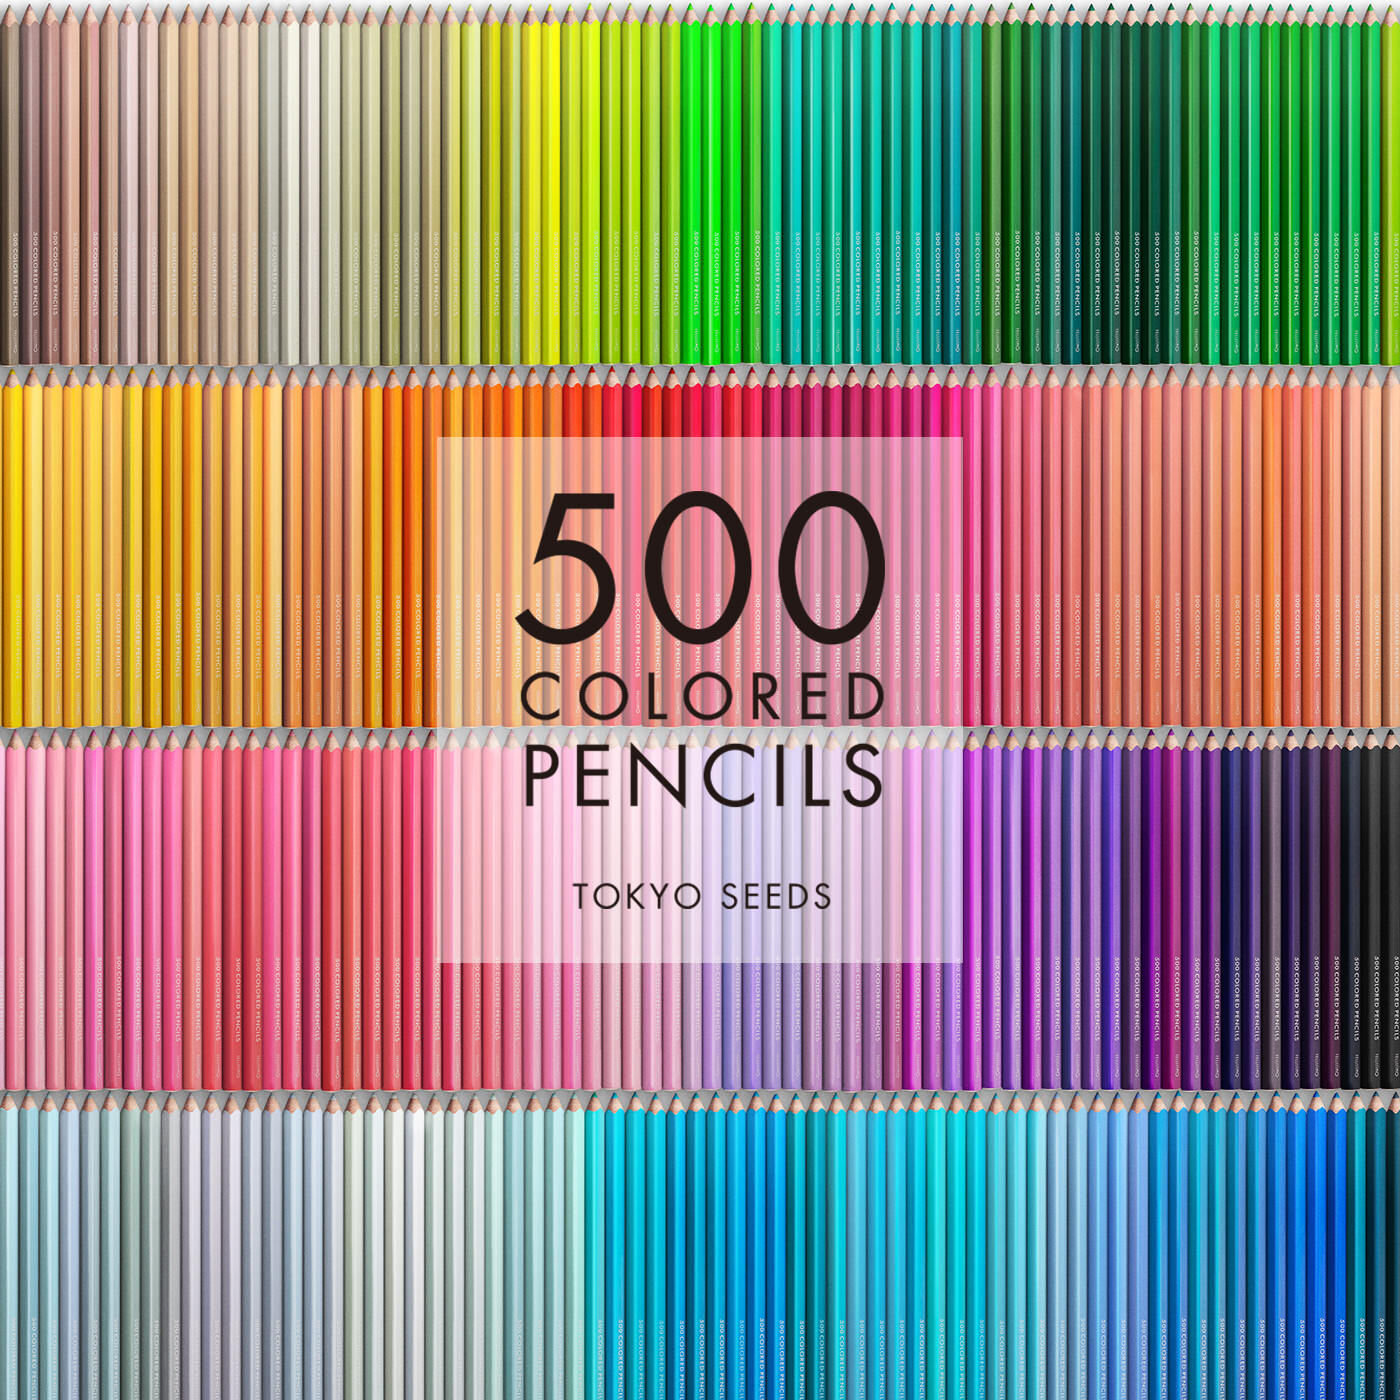 Real Stock|【13/500 HYDRANGEA SCENT】500色の色えんぴつ TOKYO SEEDS|1992年、世界初の「500色」という膨大な色数の色えんぴつが誕生して以来、その販売数は発売当初から合わせると、世界55ヵ国10万セット以上。今回、メイド・イン・ジャパンにこだわり、すべてが新しく生まれ変わって登場しました。